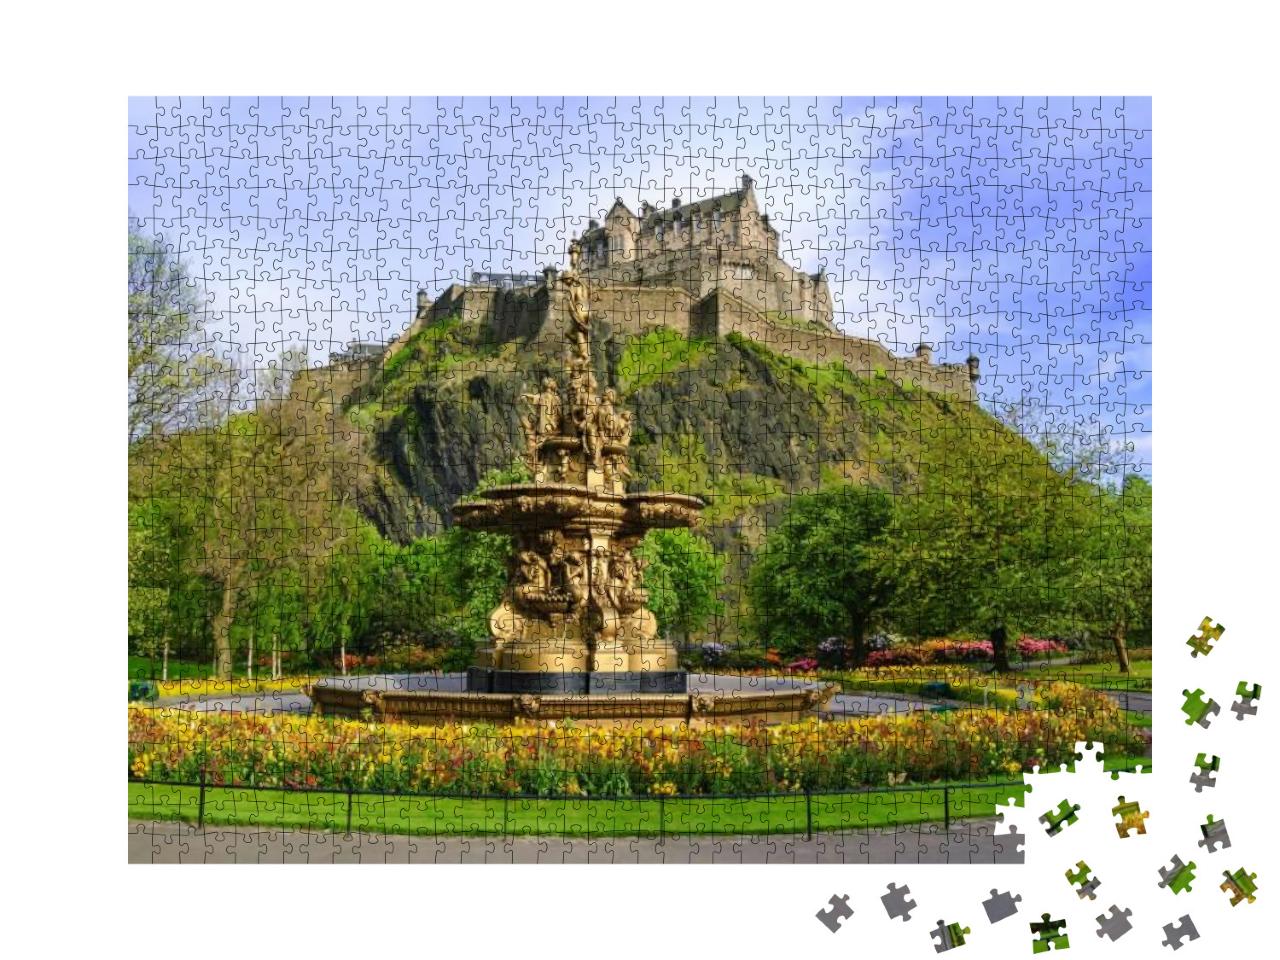 Puzzle 1000 Teile „Ross Fountain in den Pinces Street Gardens, Edinburgh, Schottland“